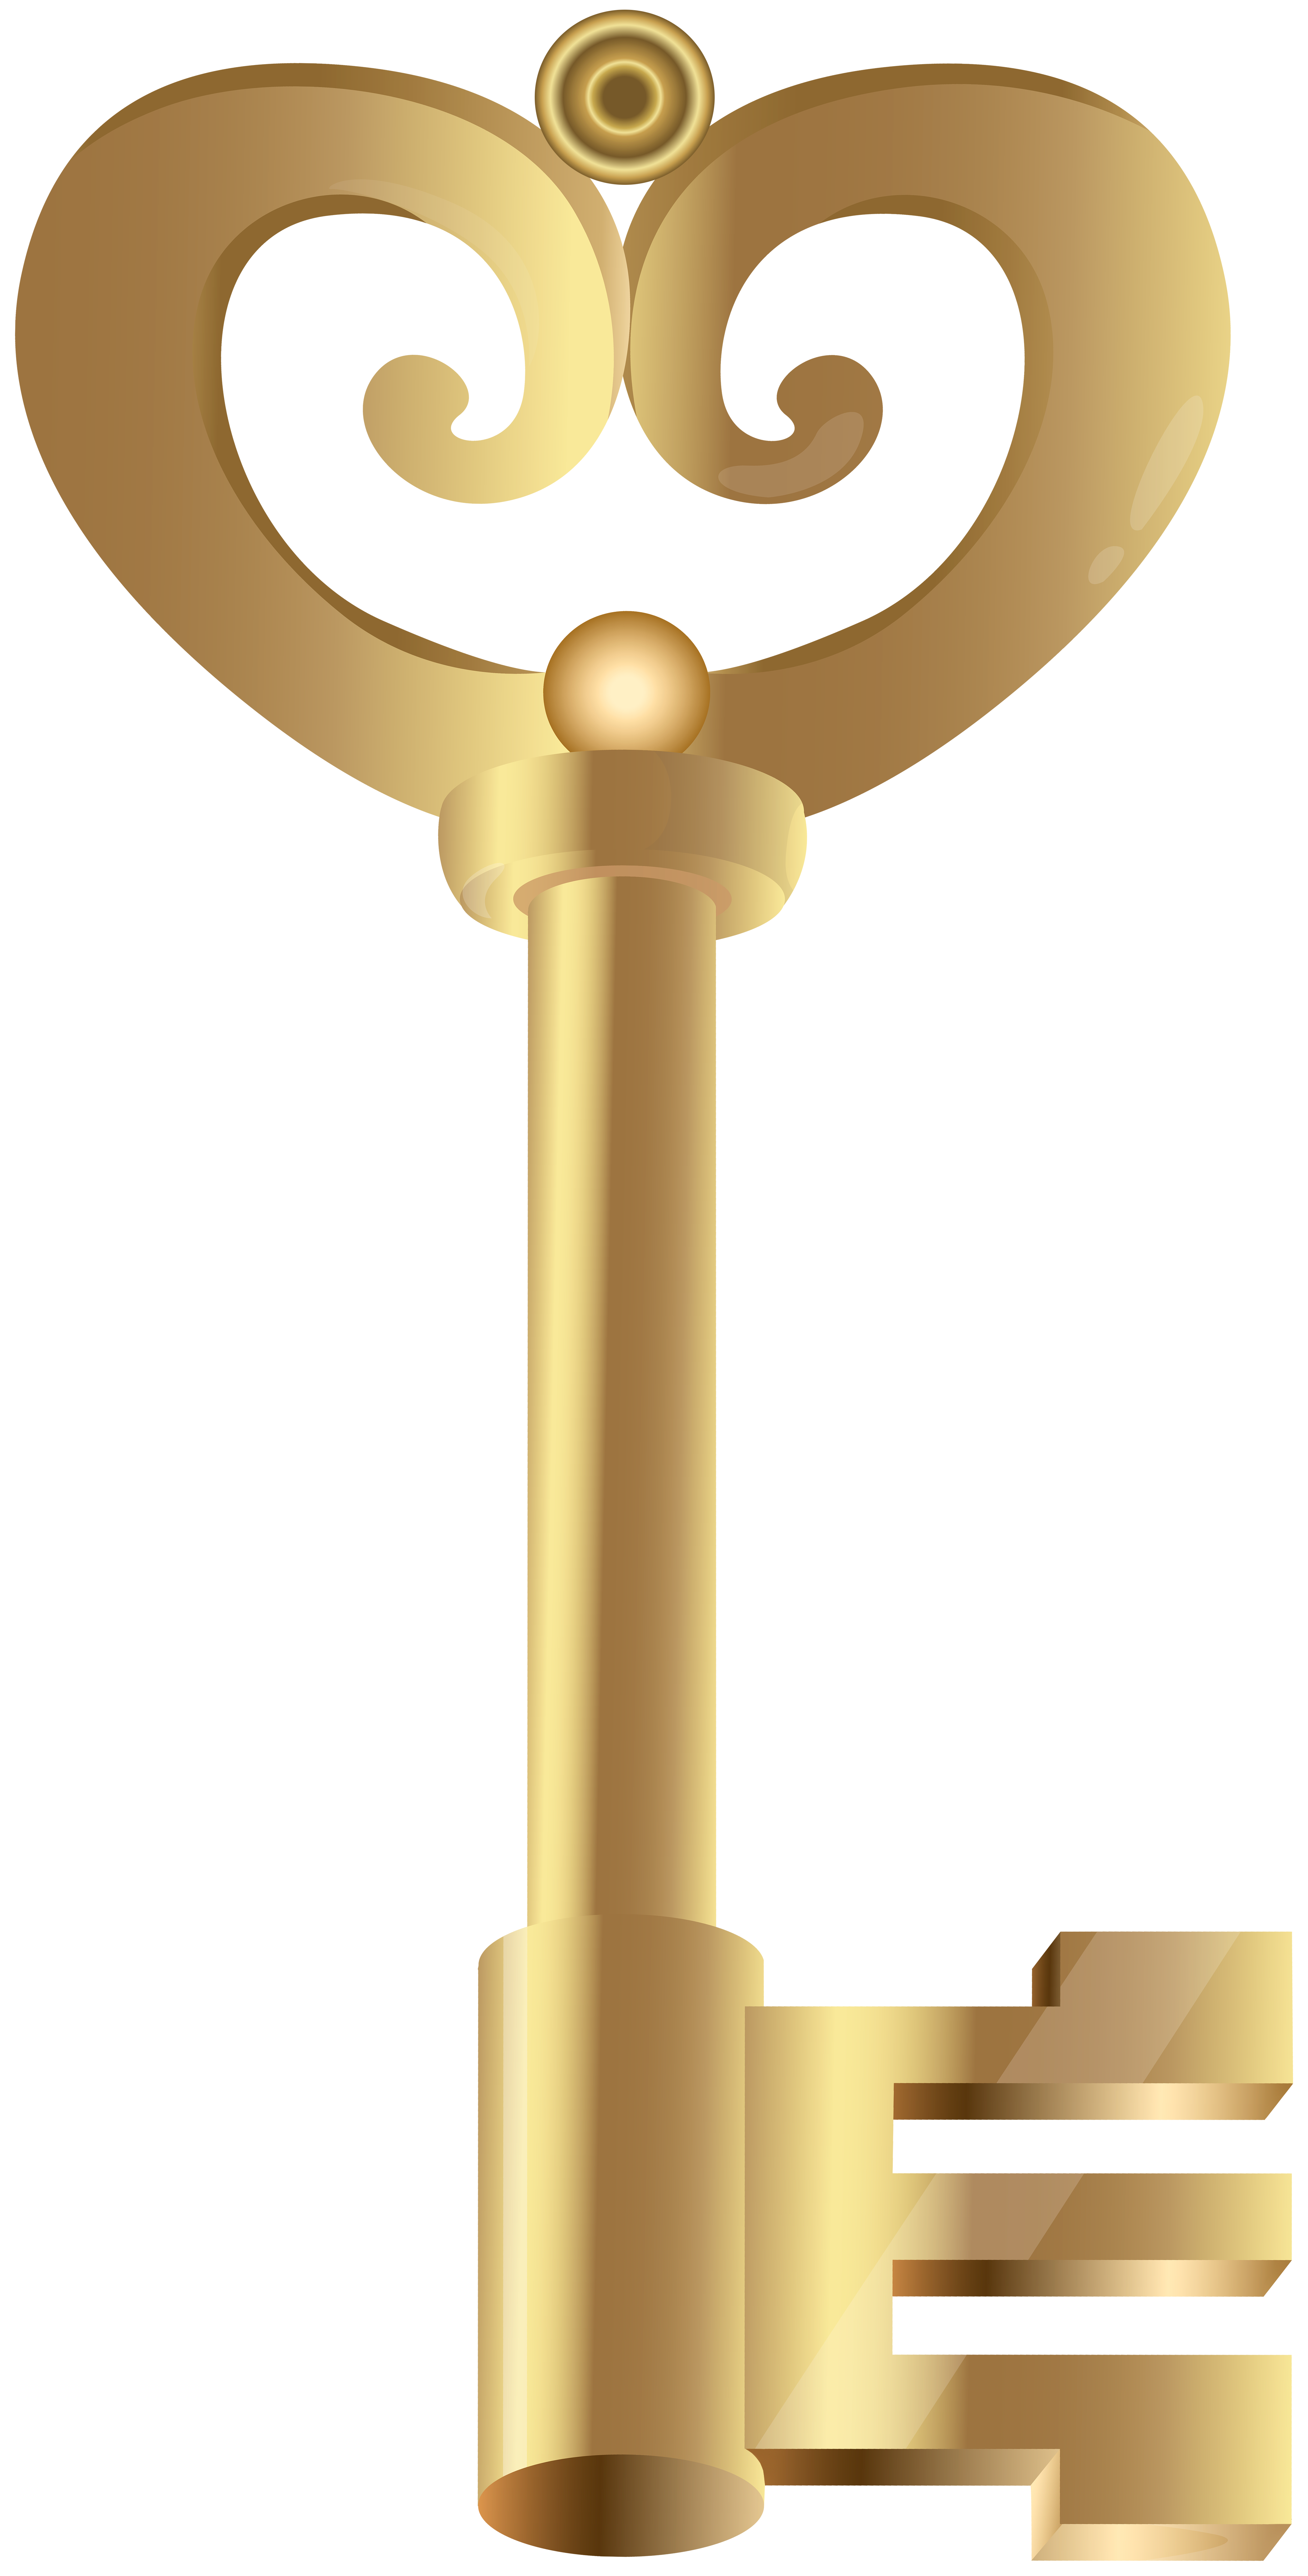 Trang trí chìa khóa vàng - Tạo sự khác biệt cho chìa khóa của bạn với một chút trang trí vàng. Thiết kế sang trọng với hệ thống khóa tiên tiến, chiếc chìa khóa này sẽ cho thấy sự đẳng cấp của bạn.